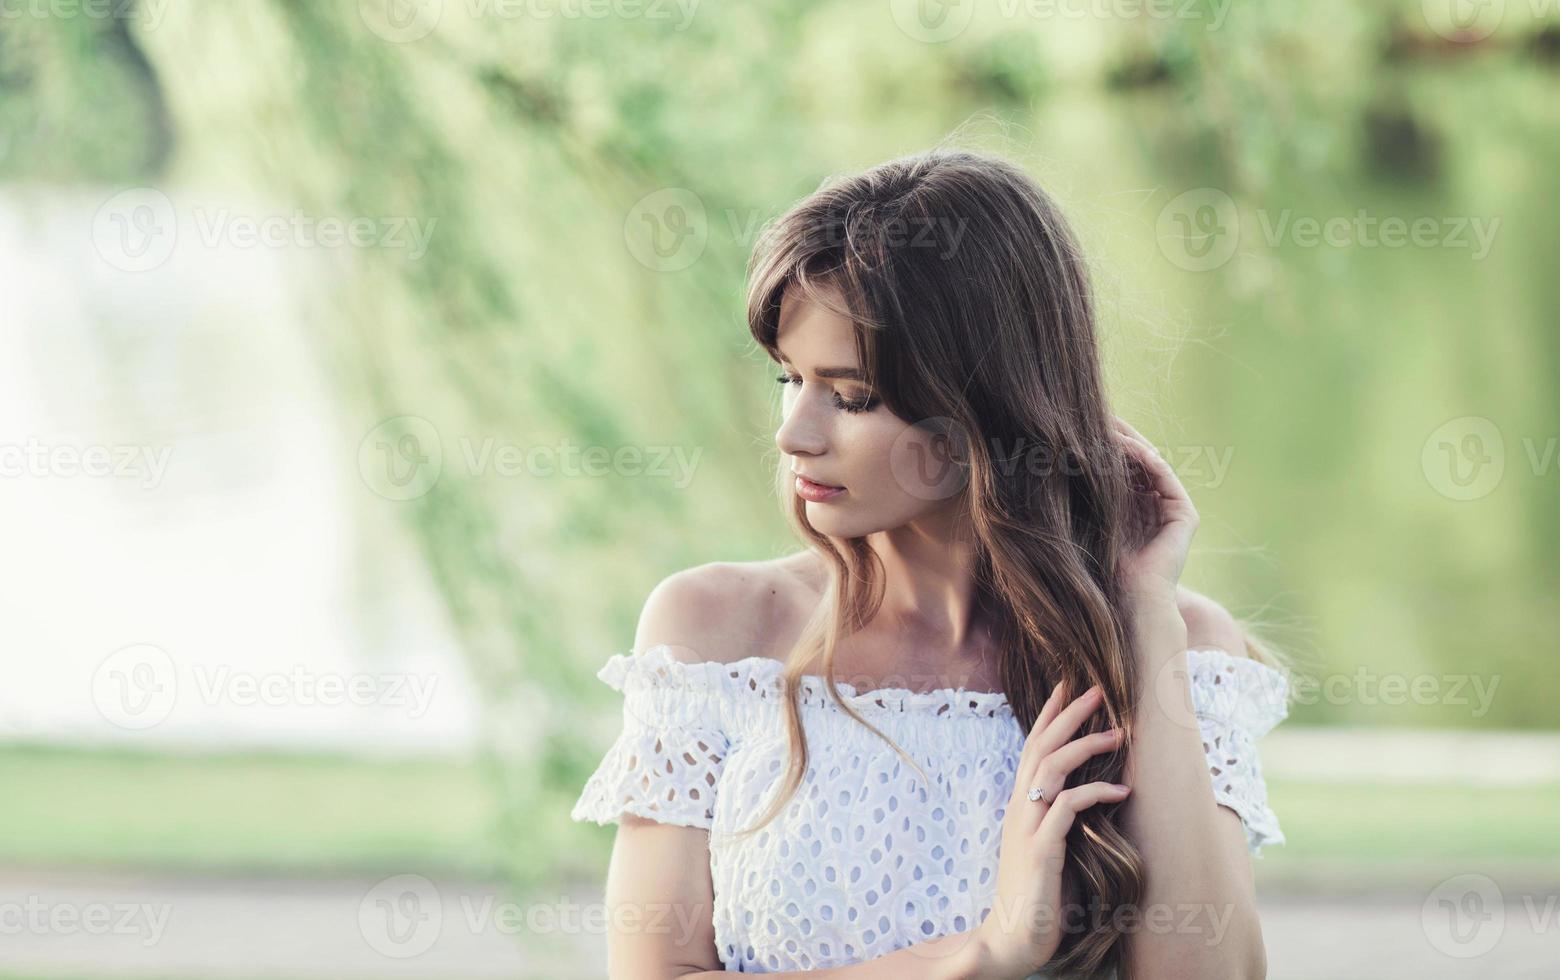 garota linda em um vestido branco foto